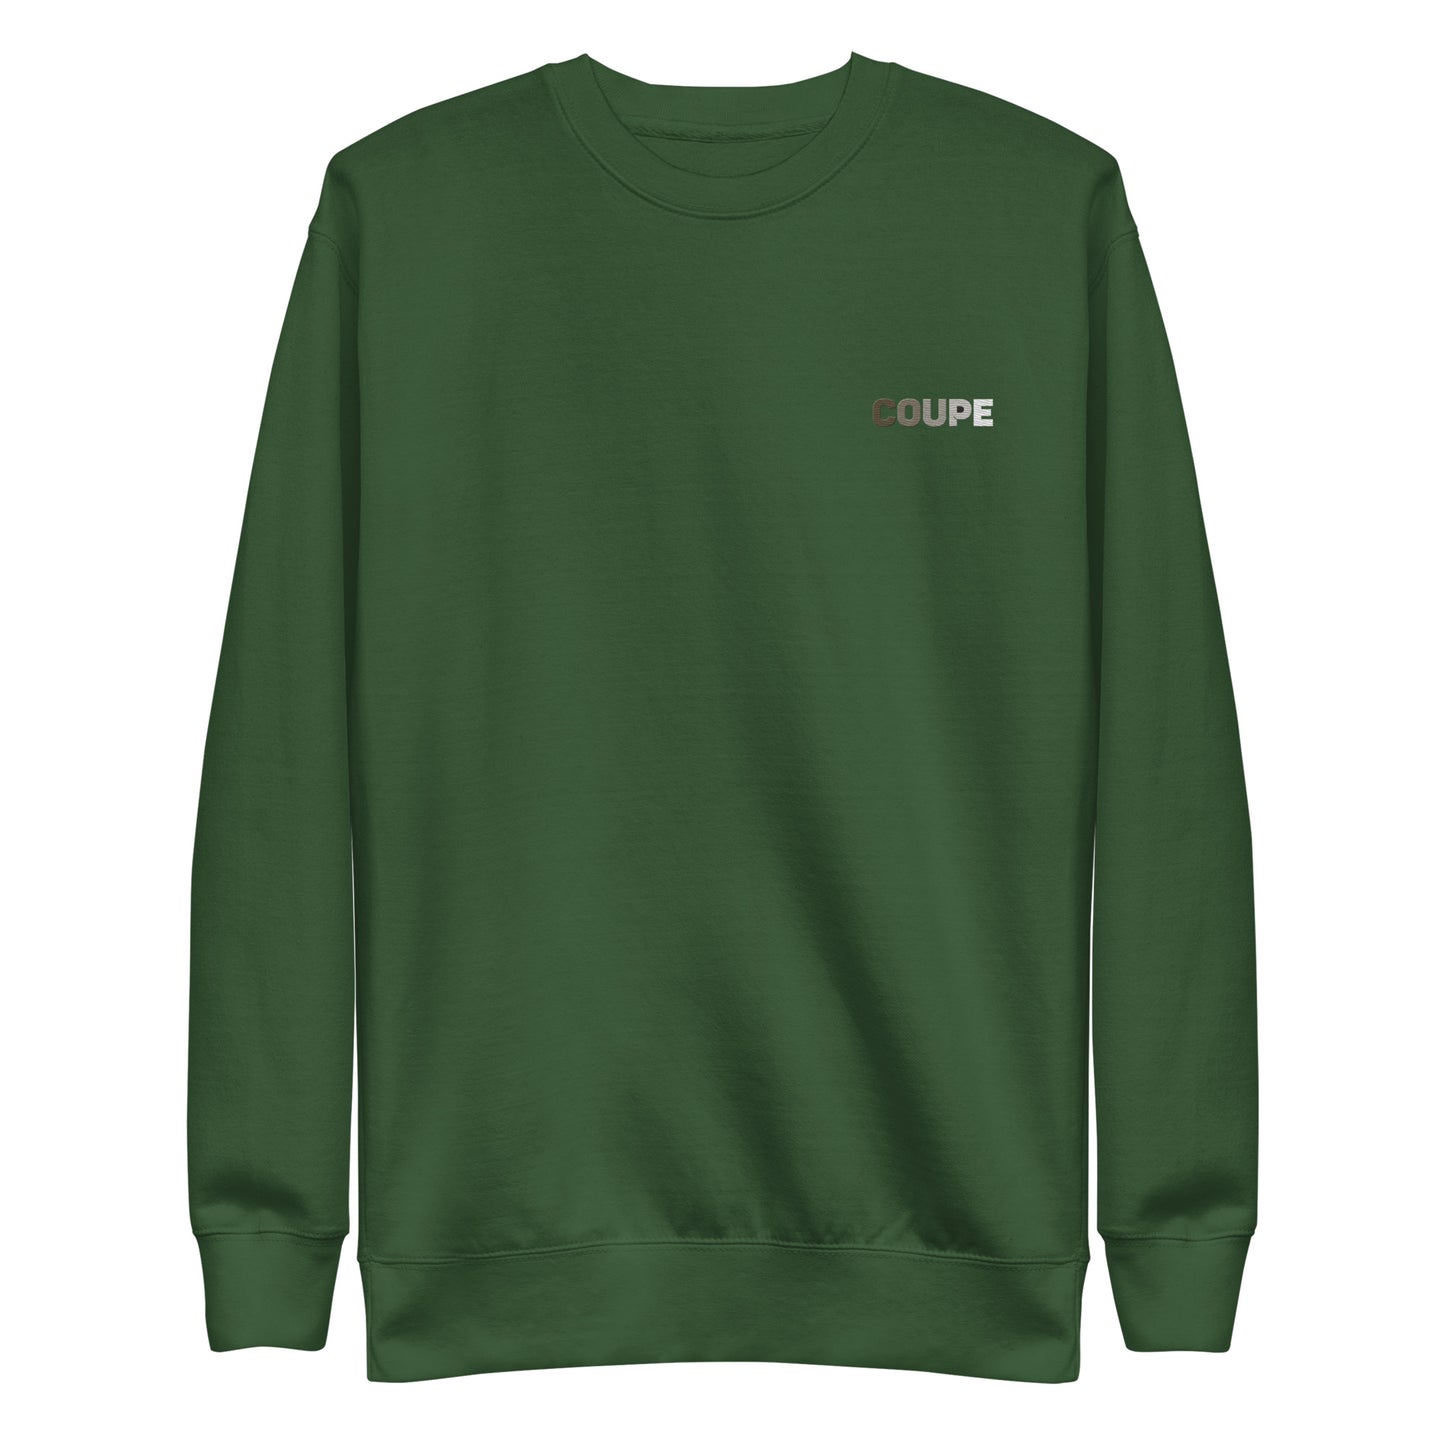 Unisex premium Sweatshirt